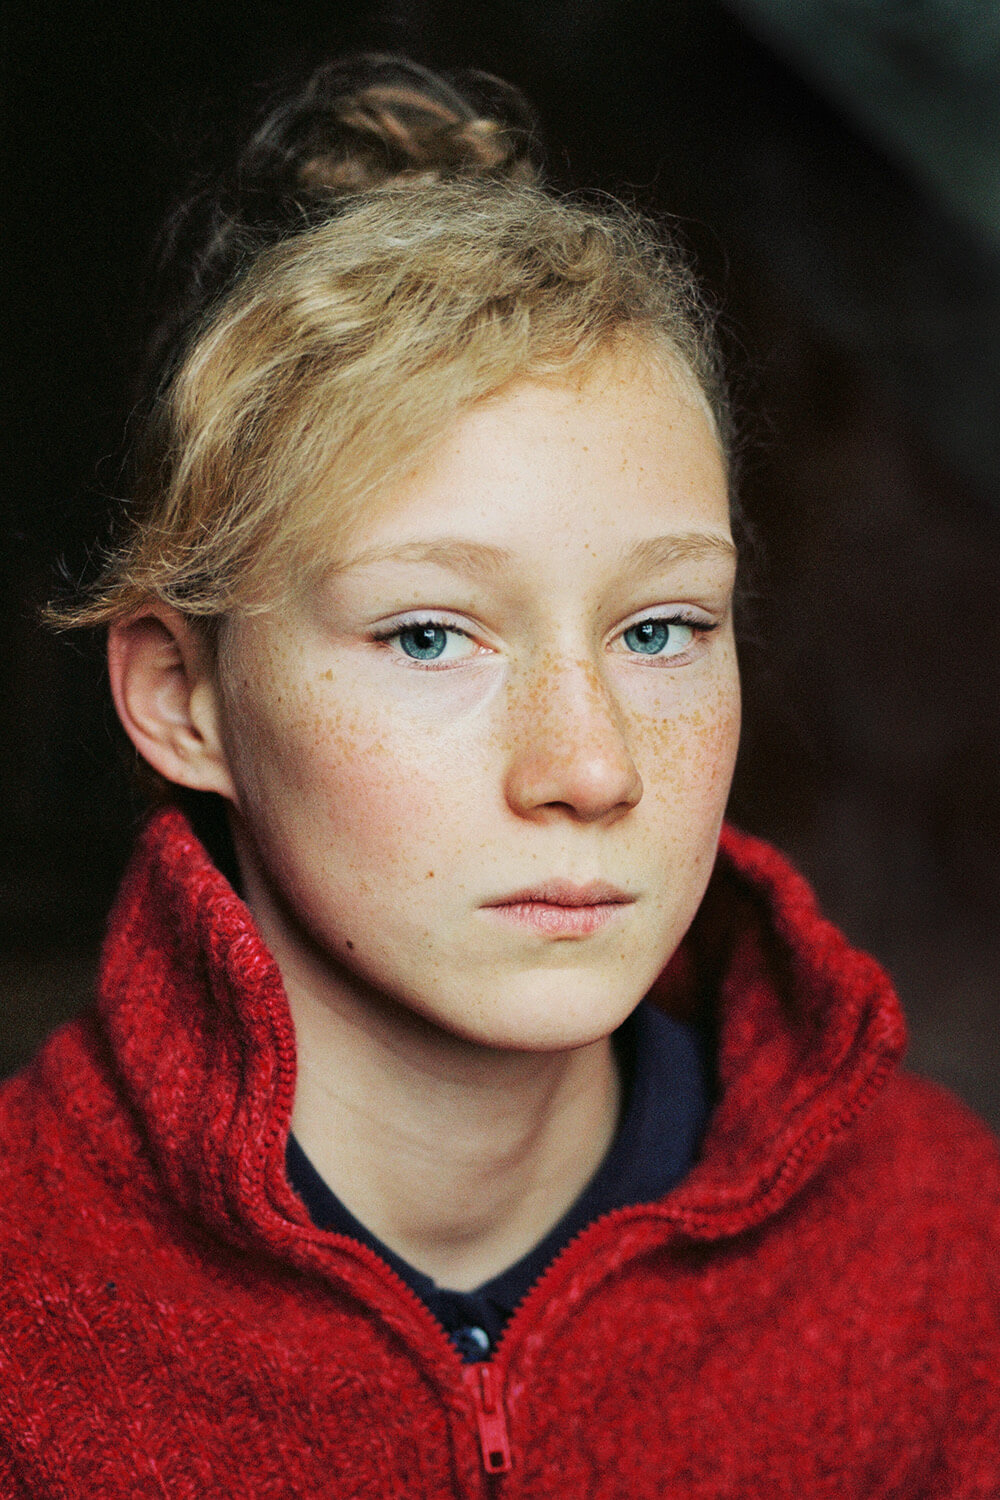 Göran Gnaudschun, Thikwa, 2008, aus: Neue Portraits, 2005-2008, Pigmentdruck, 24,8 x 16,3 cm